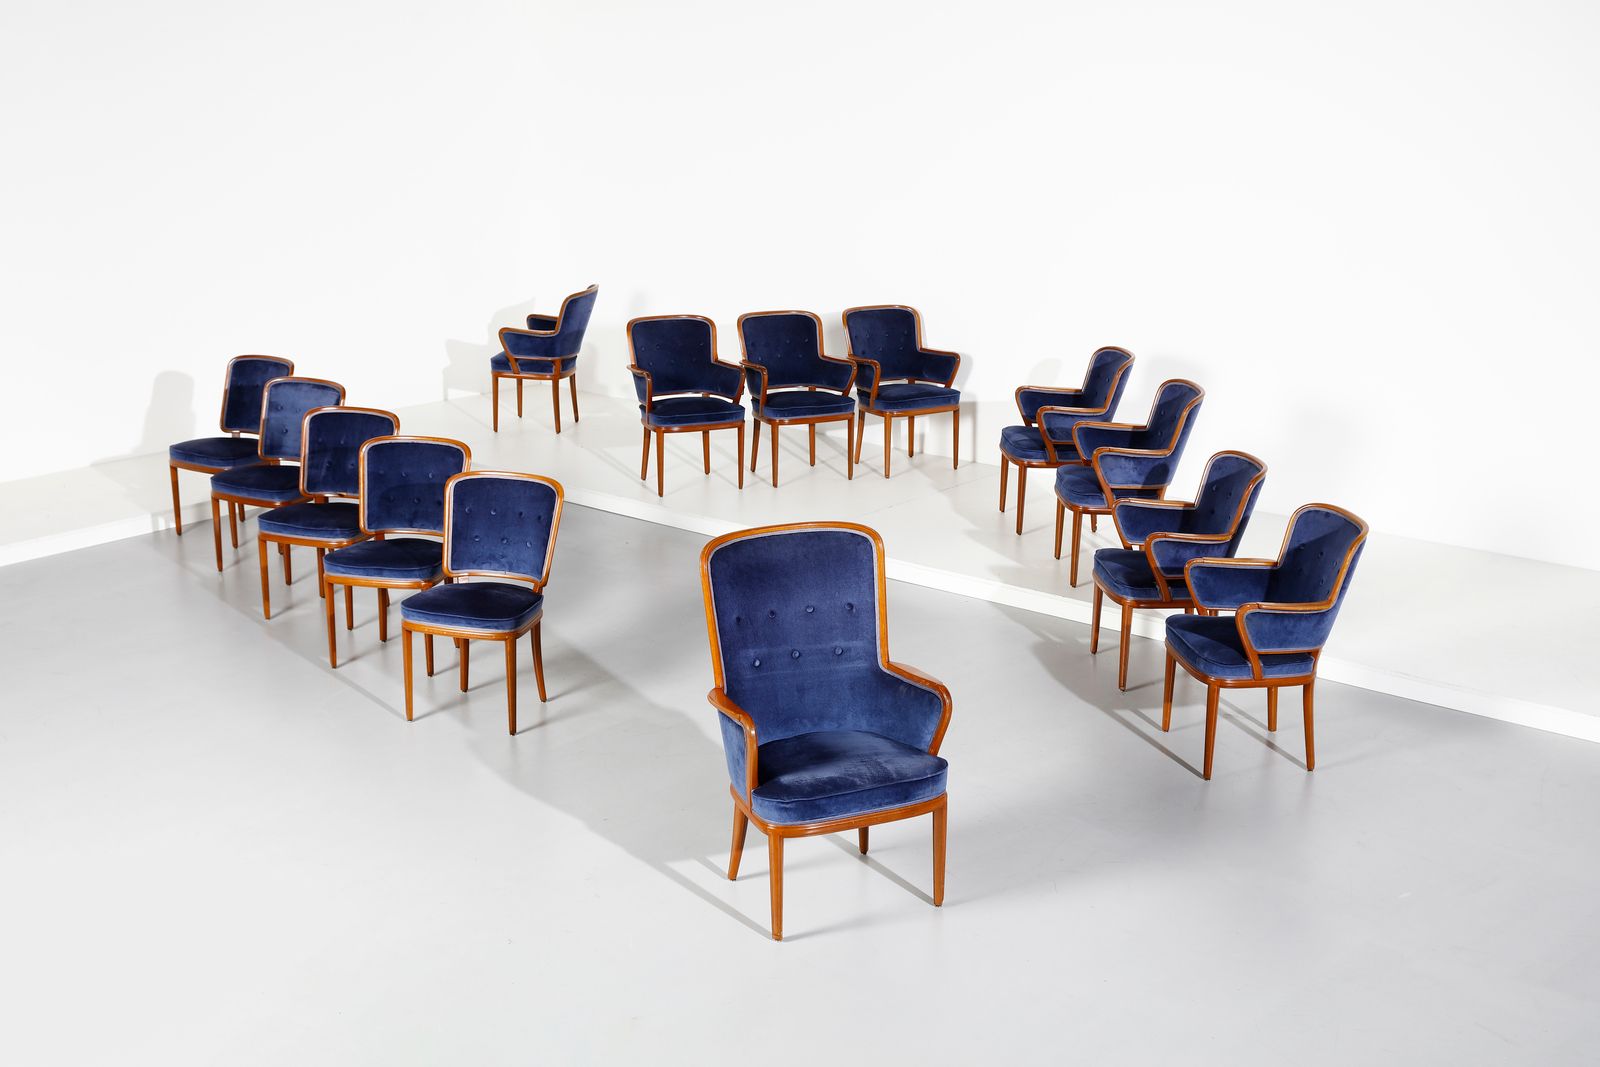 MALMSTEN CARL (1888 - 1972) MALMSTEN CARL (1888 - 1972). Fourteen chairs (Vierze&hellip;